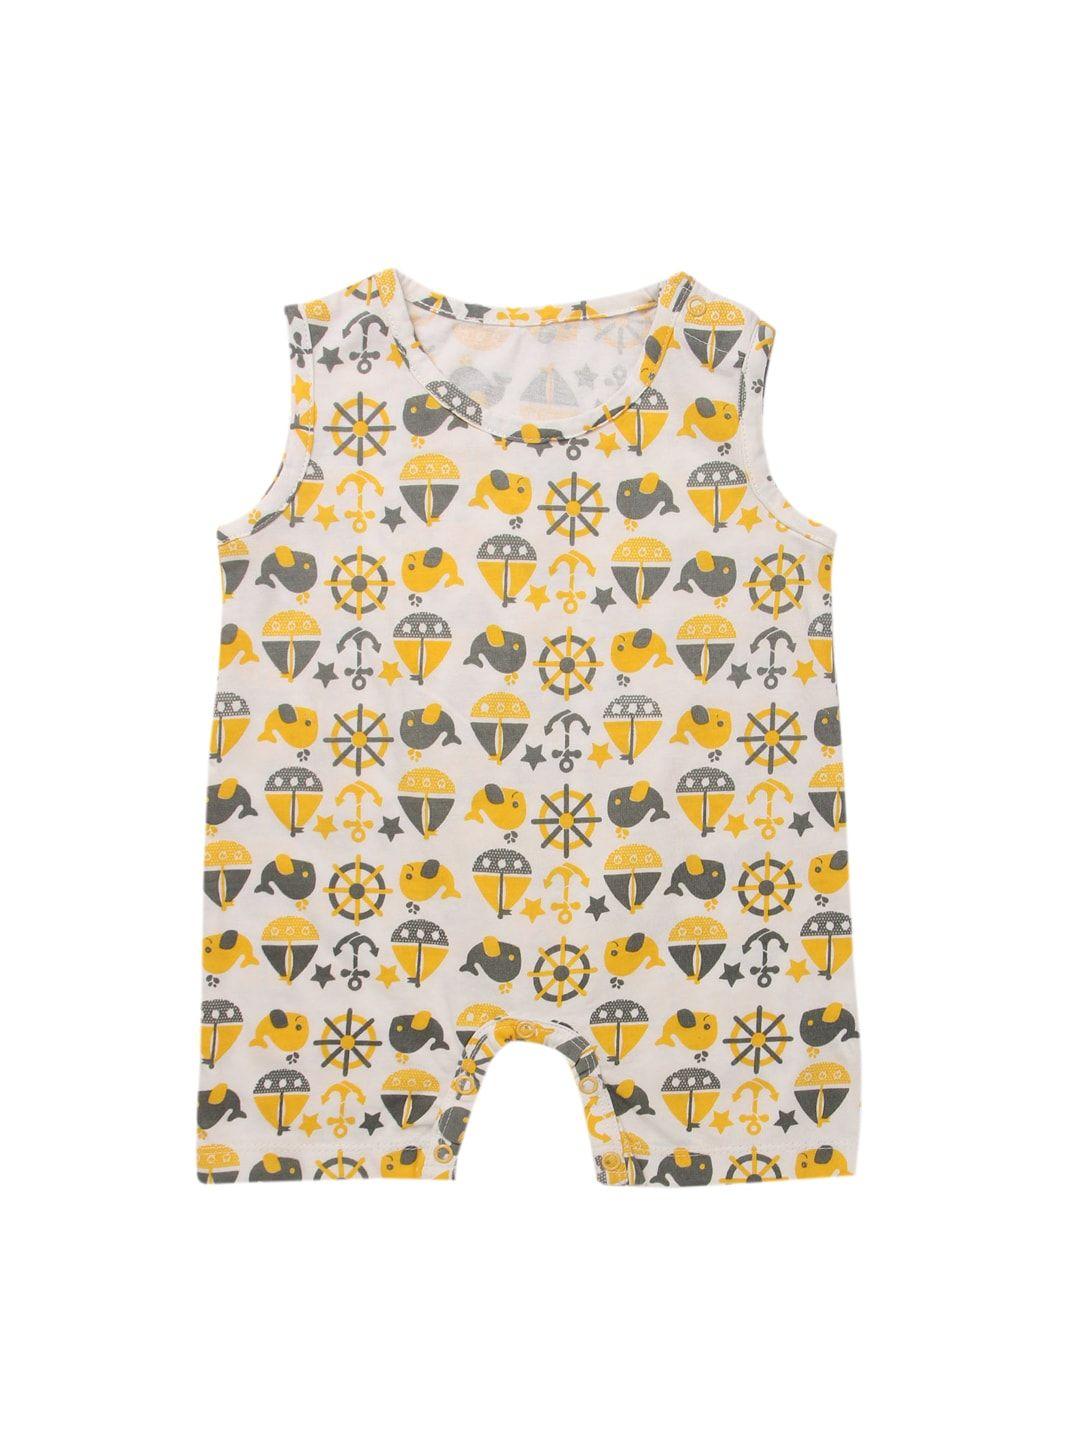 nino bambino infant girls off-white & yellow printed organic cotton sustainable romper